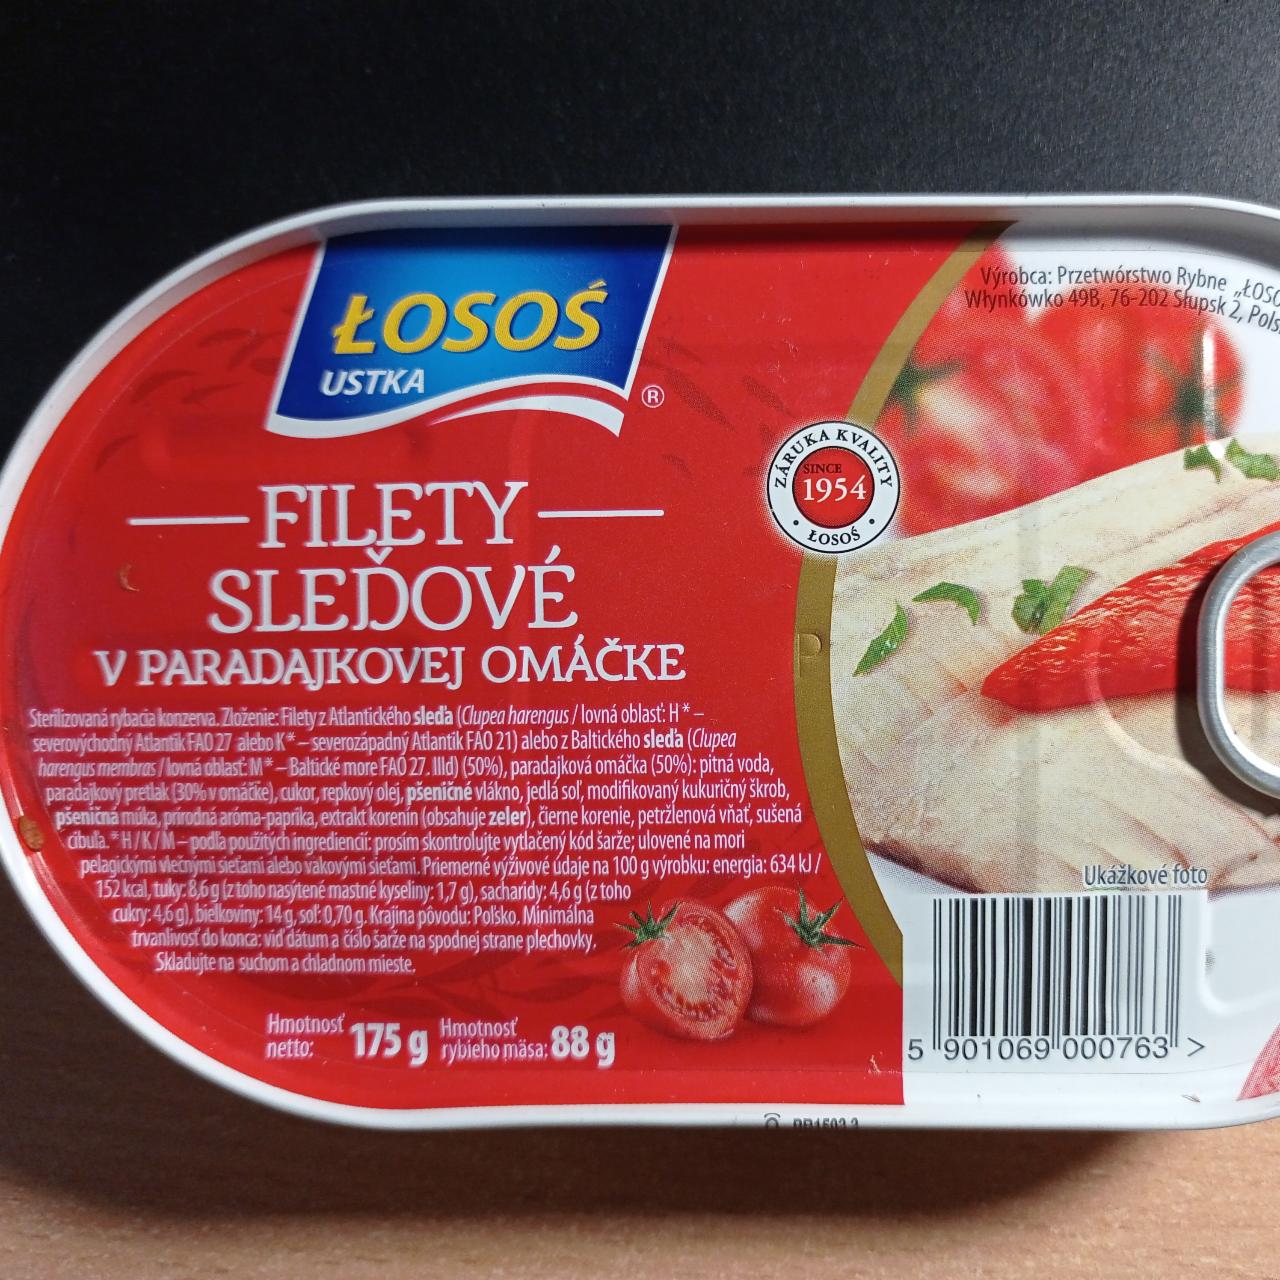 Fotografie - Filety sleďové v paradajkovej omáčke Losos Ustka